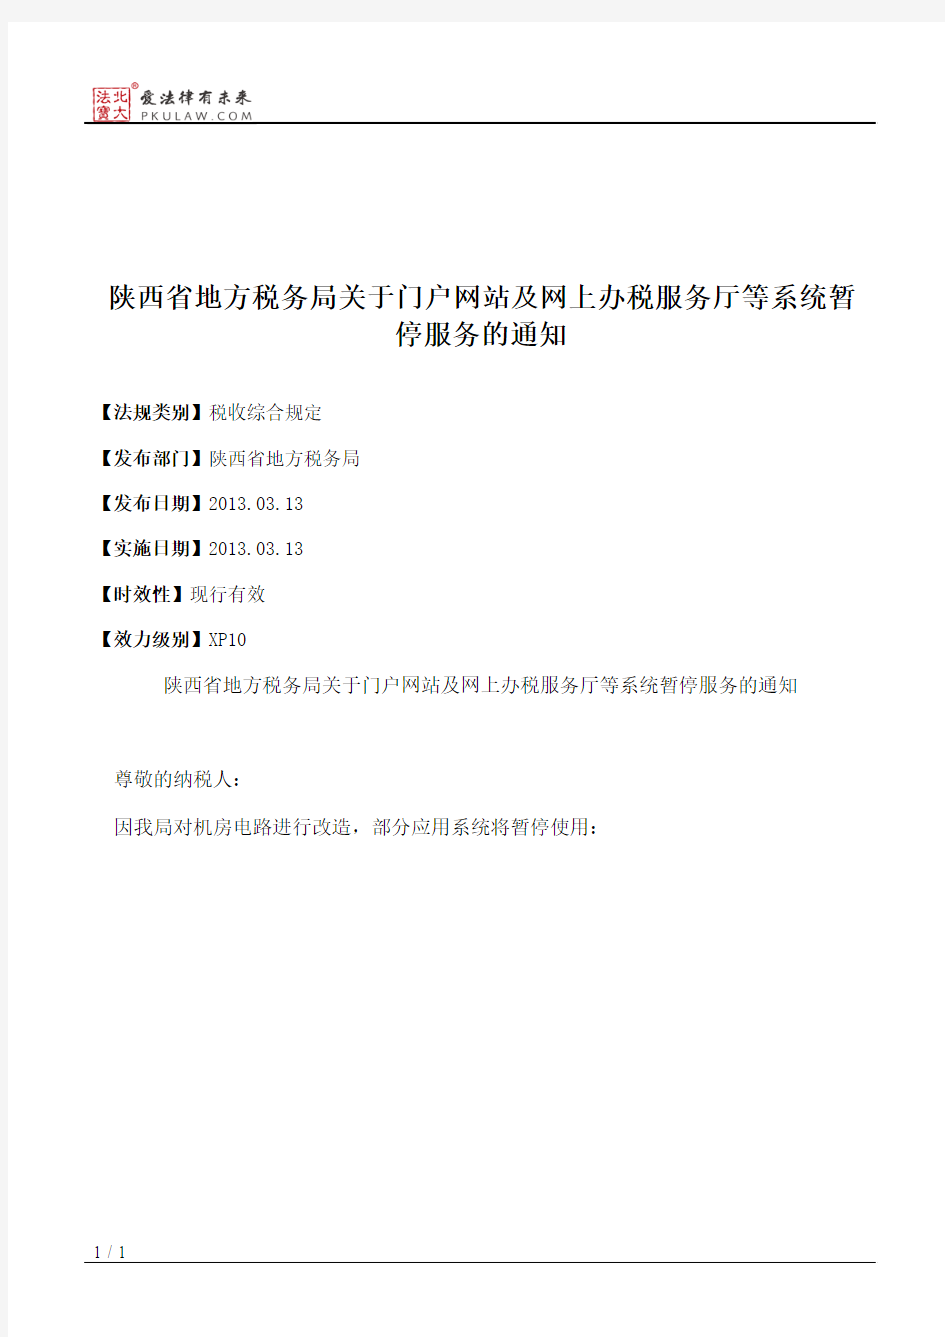 陕西省地方税务局关于门户网站及网上办税服务厅等系统暂停服务的通知